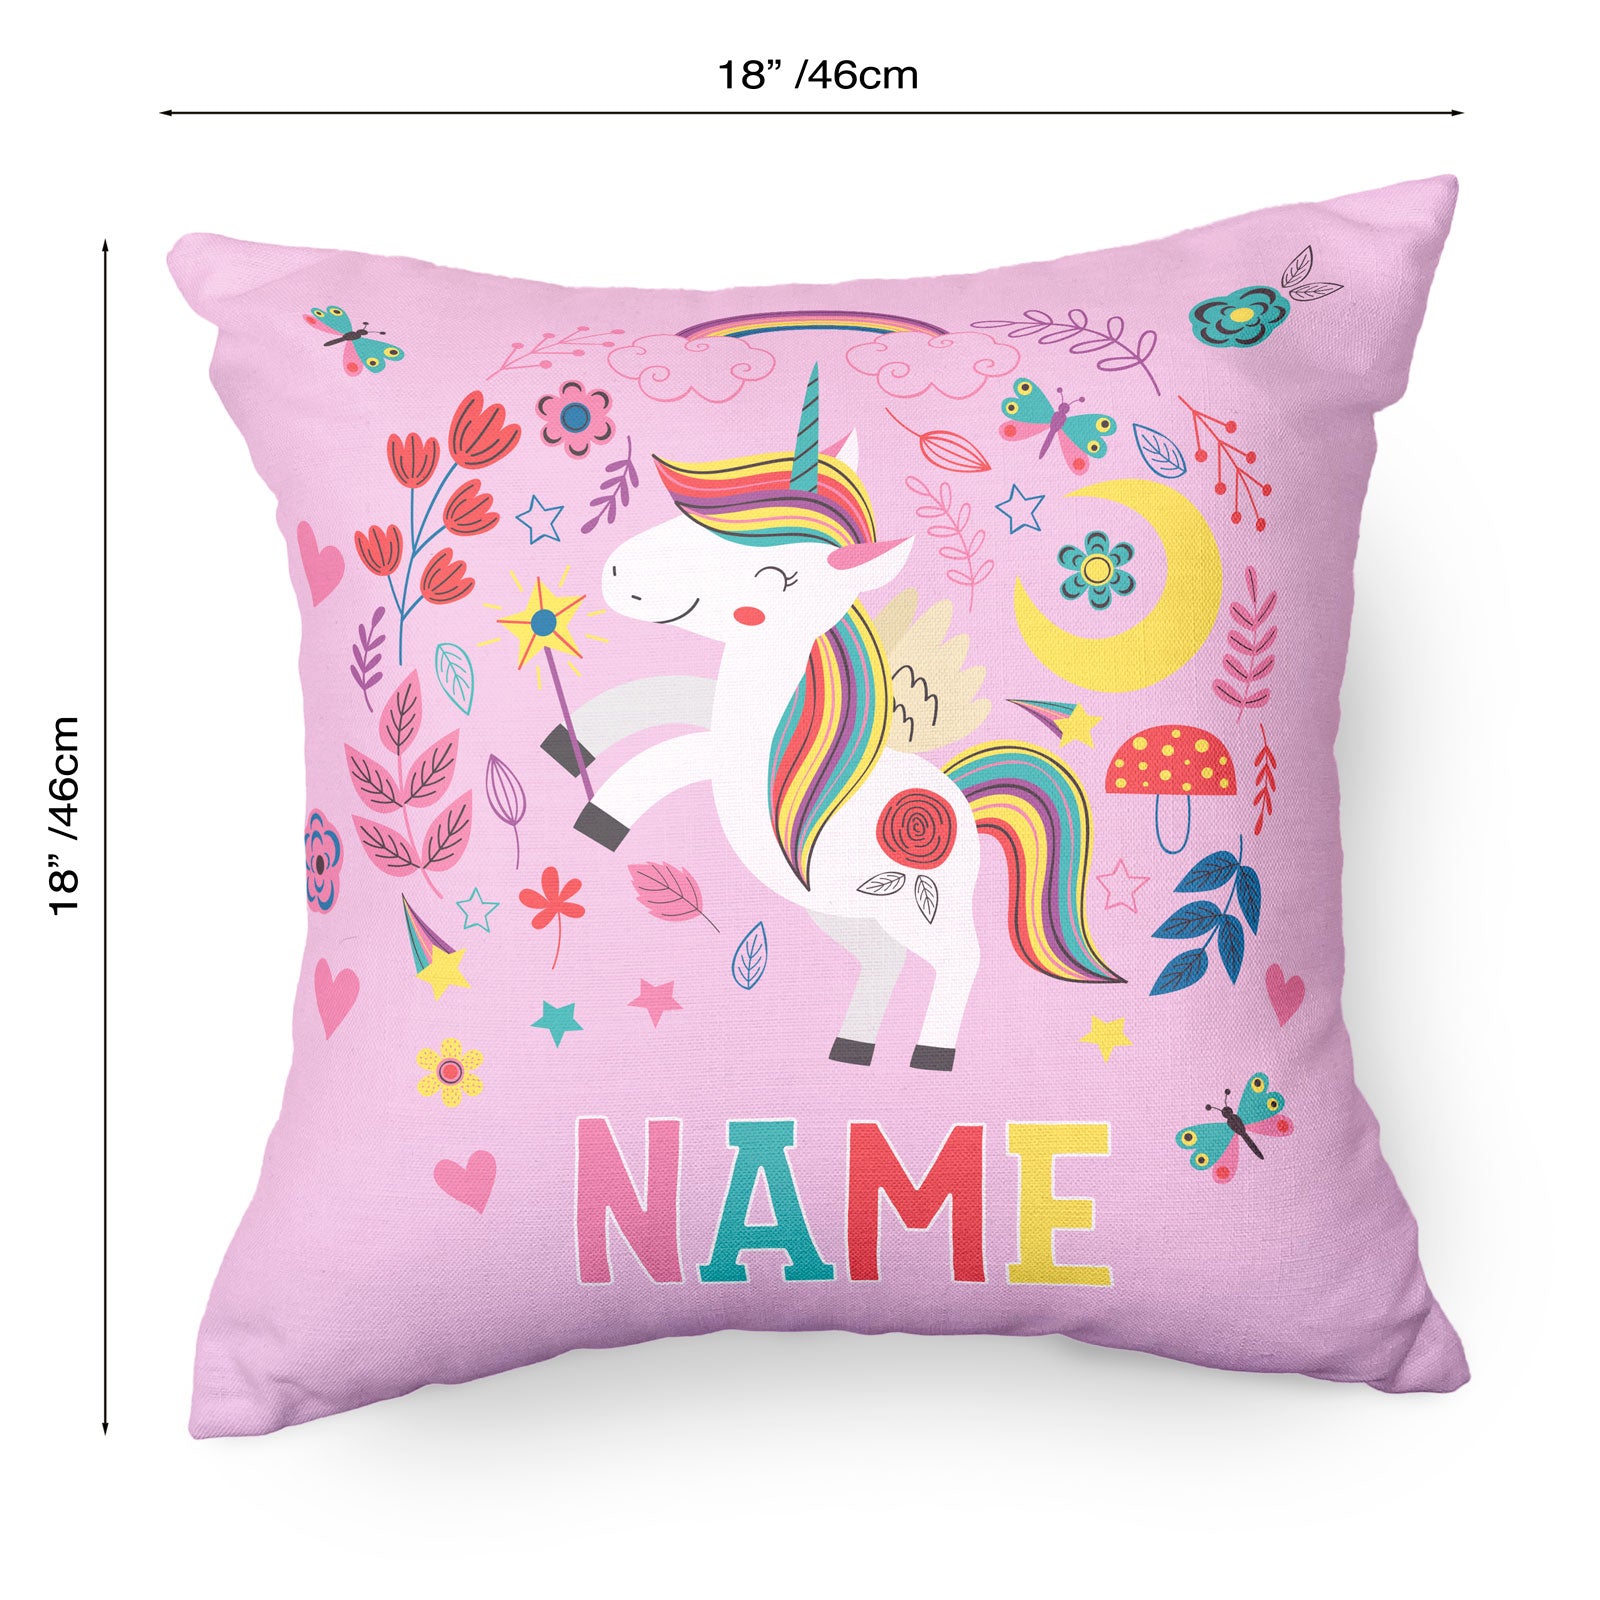 Personalised Unicorn Cushion For Kids